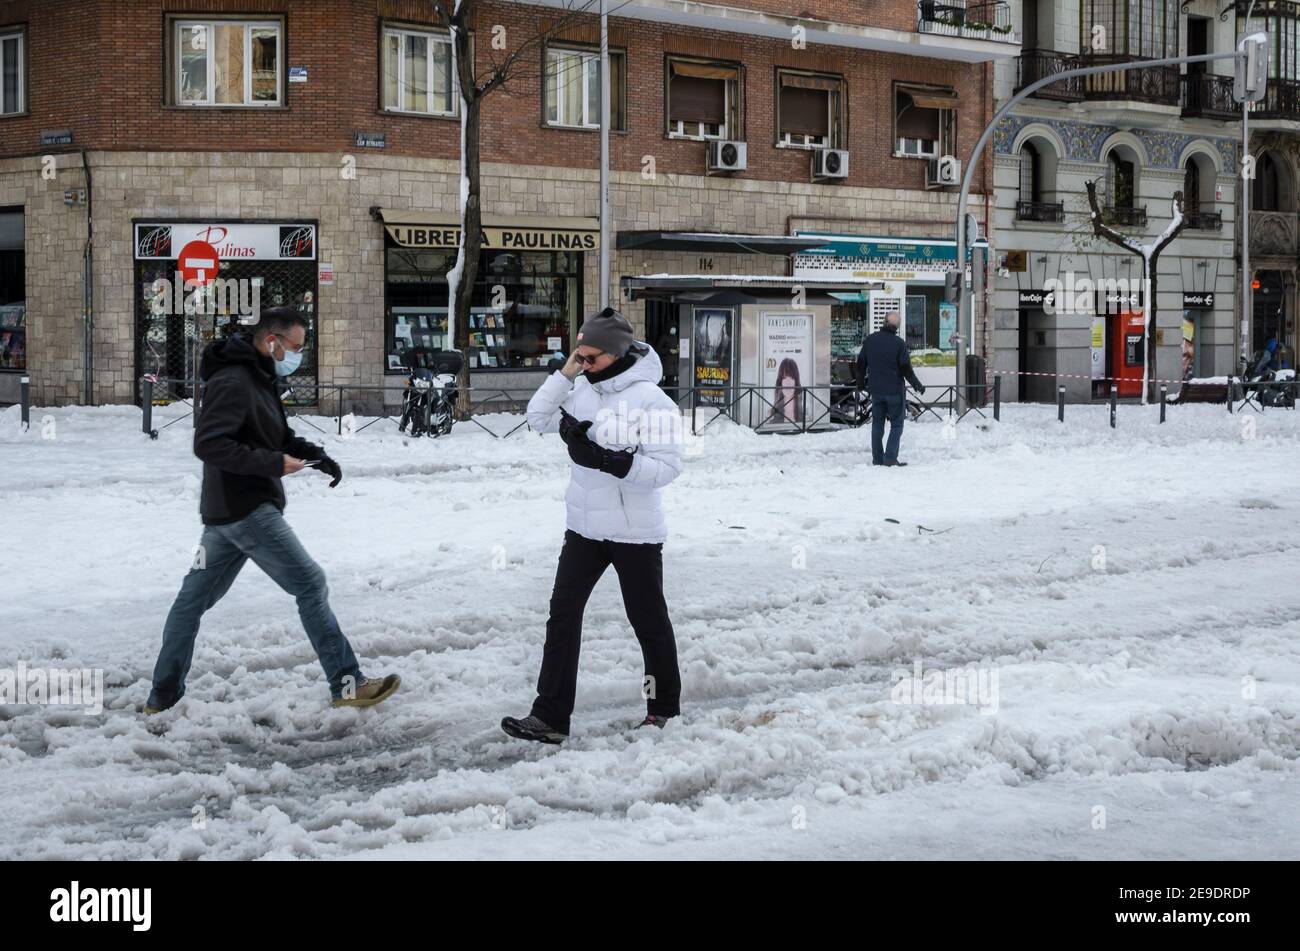 Madrid, Espagne. 10 janvier 2021. Vue sur une marche dans la rue Fuencarral après une tempête de neige. Crédit: Enrique Davó. Banque D'Images